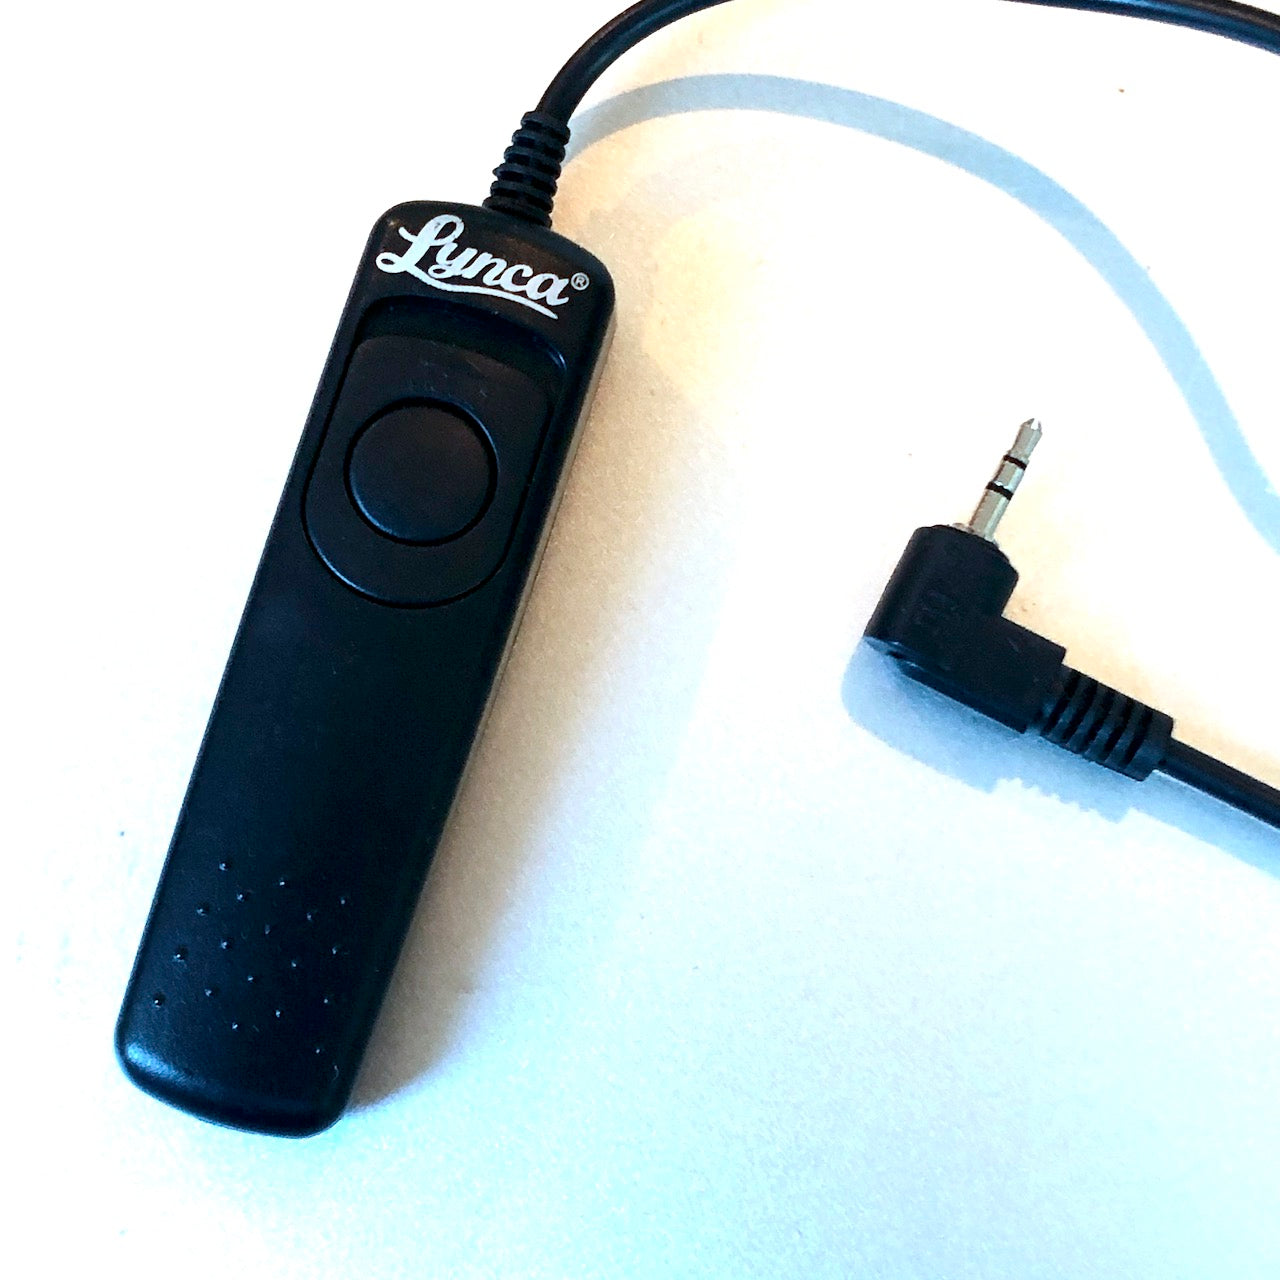 Lynca remote release for Canon E3 type remote connector